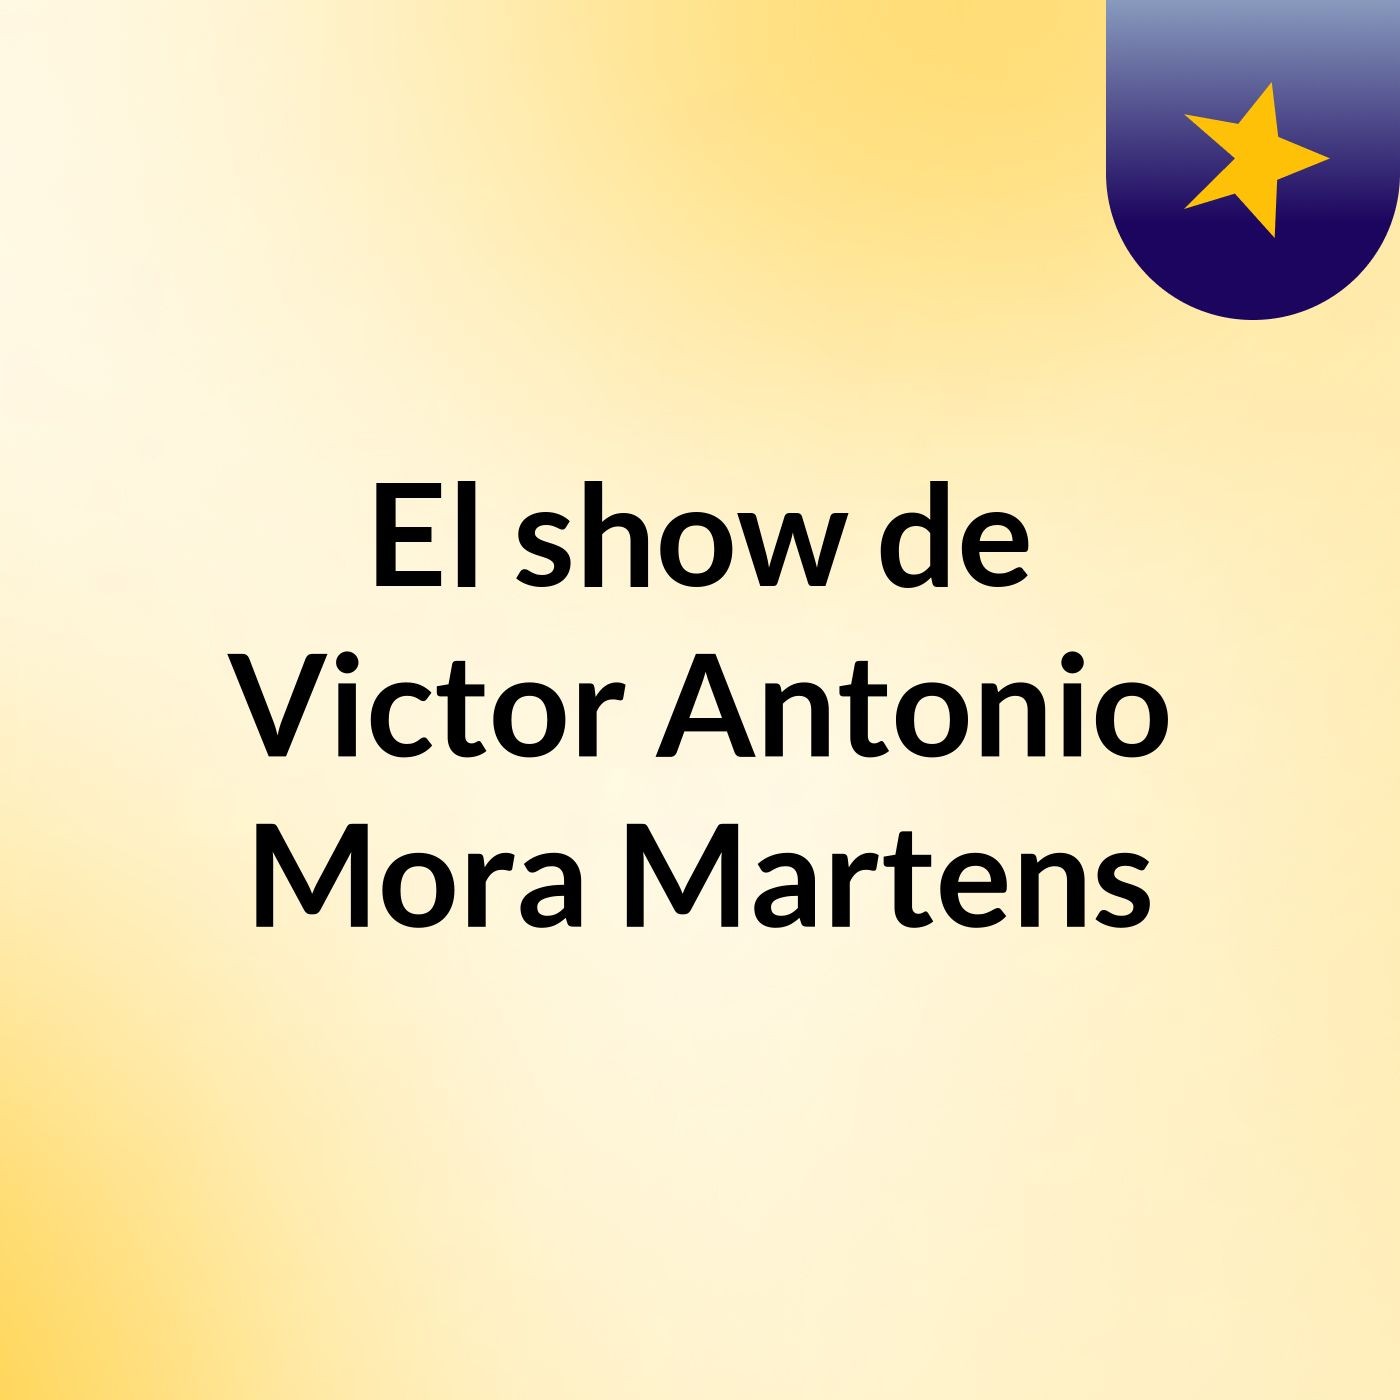 El show de Victor Antonio Mora Martens